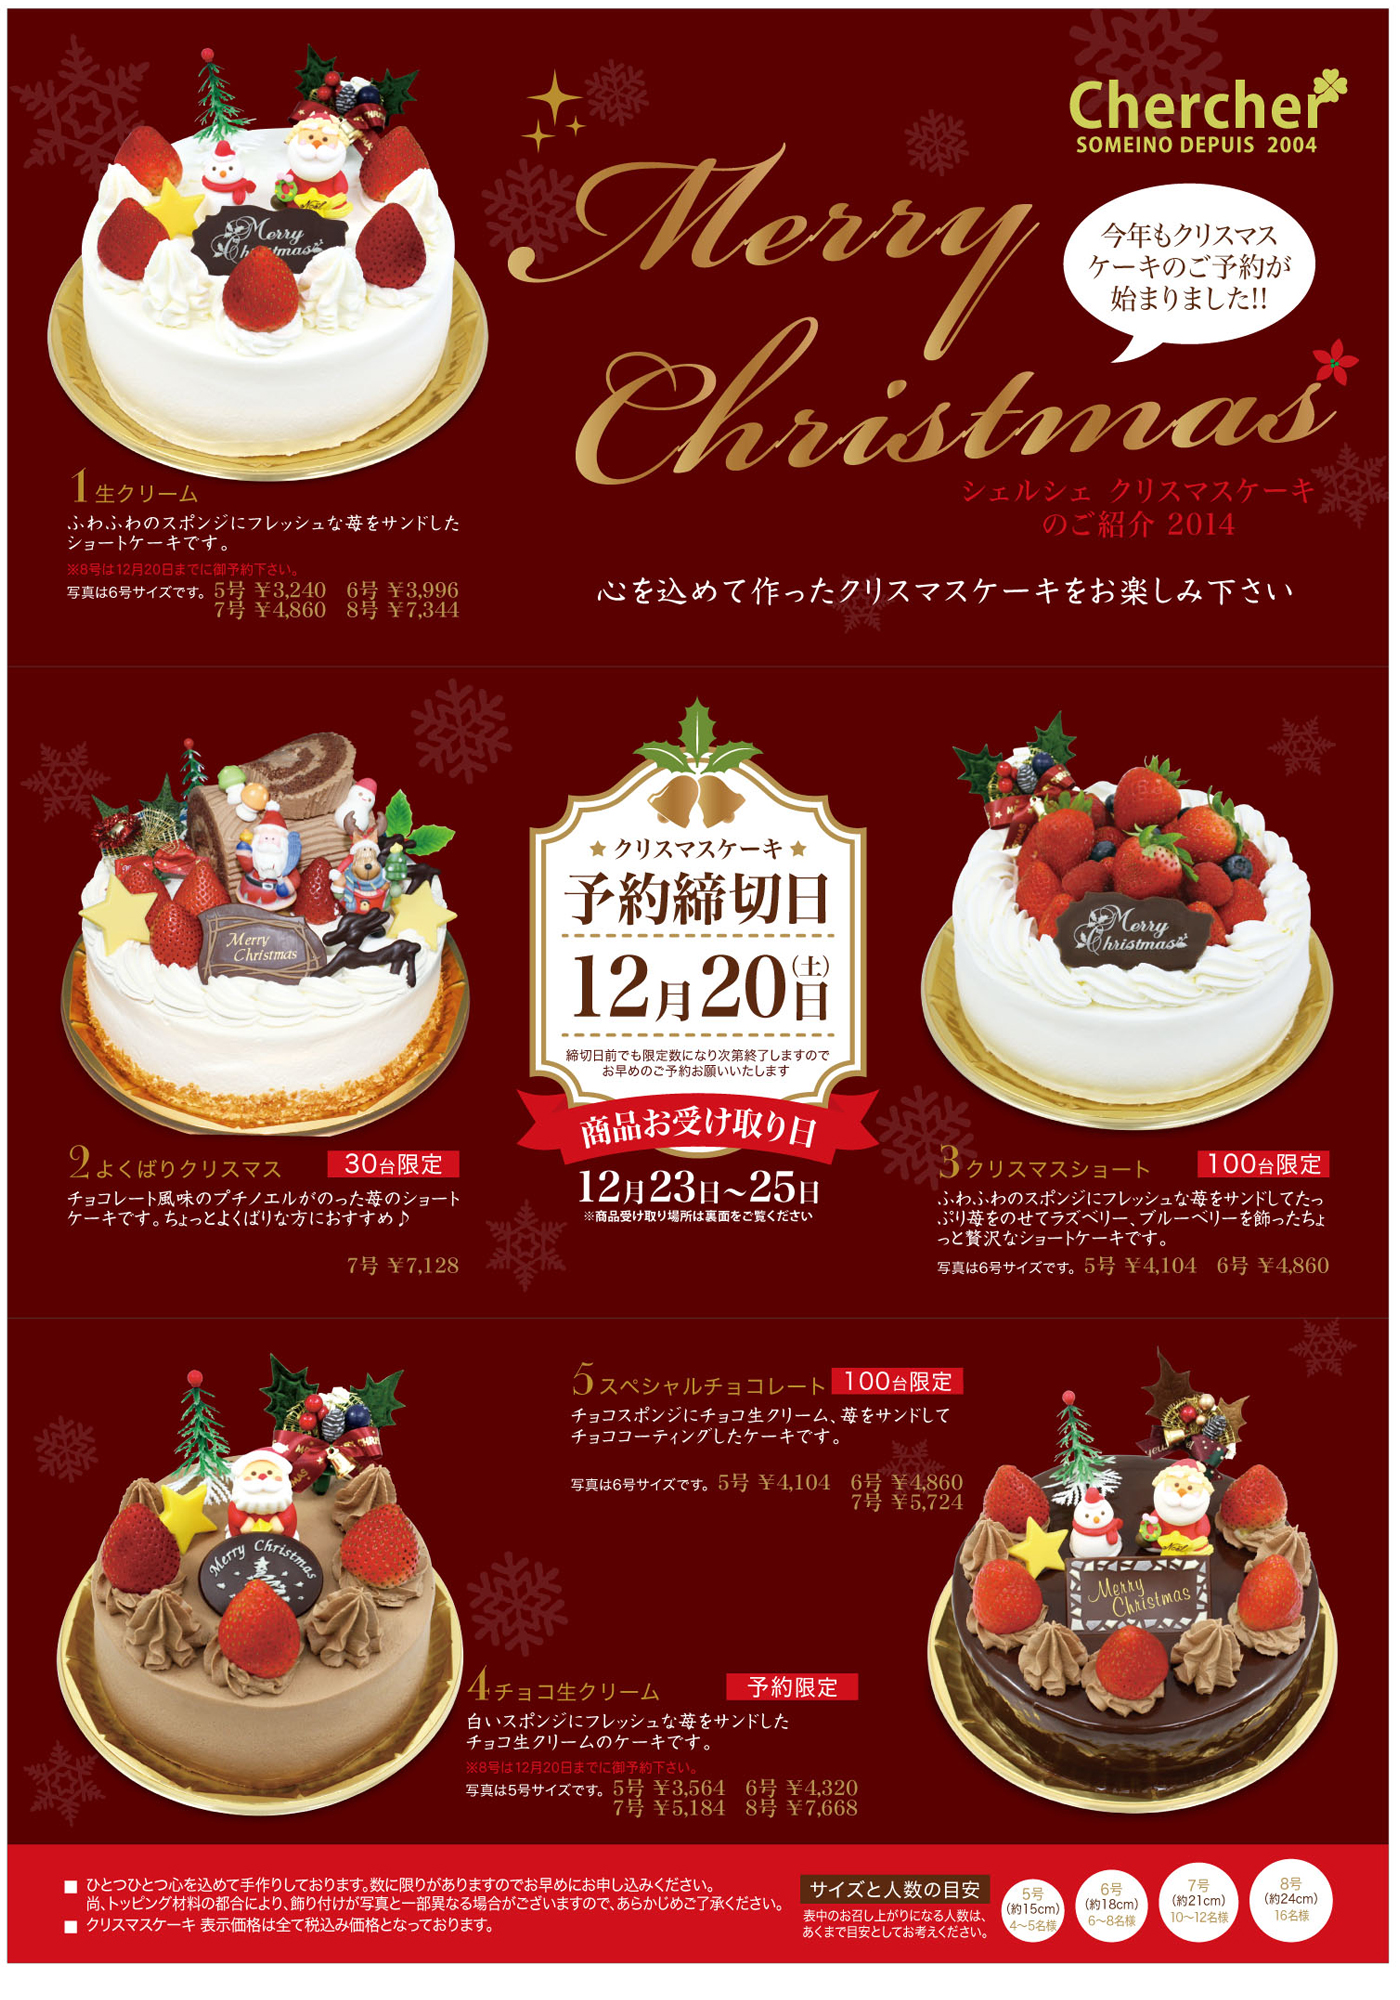 クリスマスケーキ14 菓子工房シェルシェ